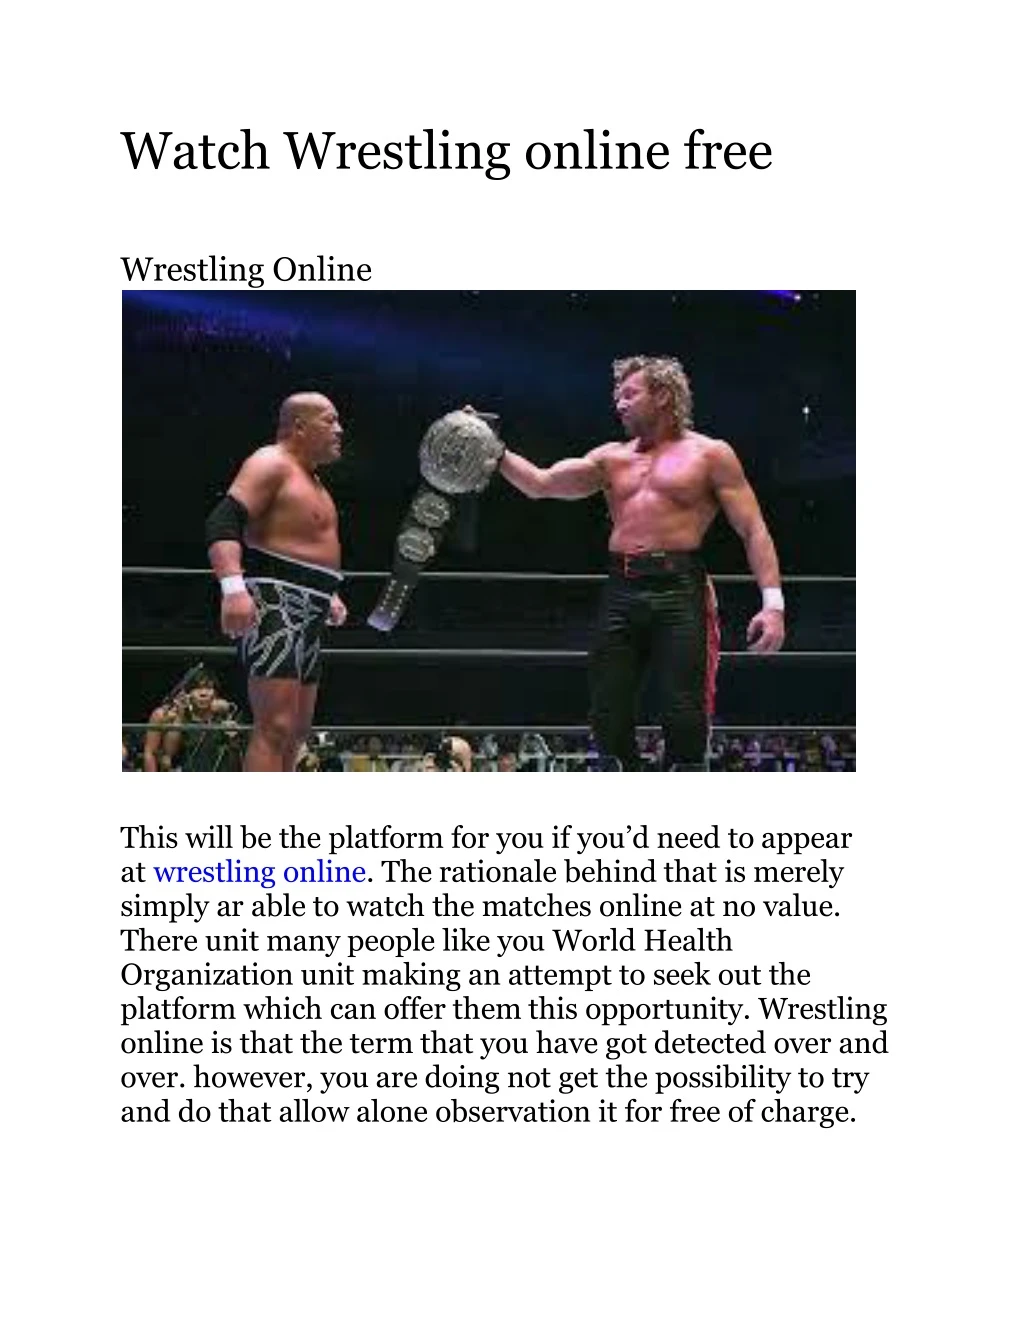 watch wrestling online free wrestling online